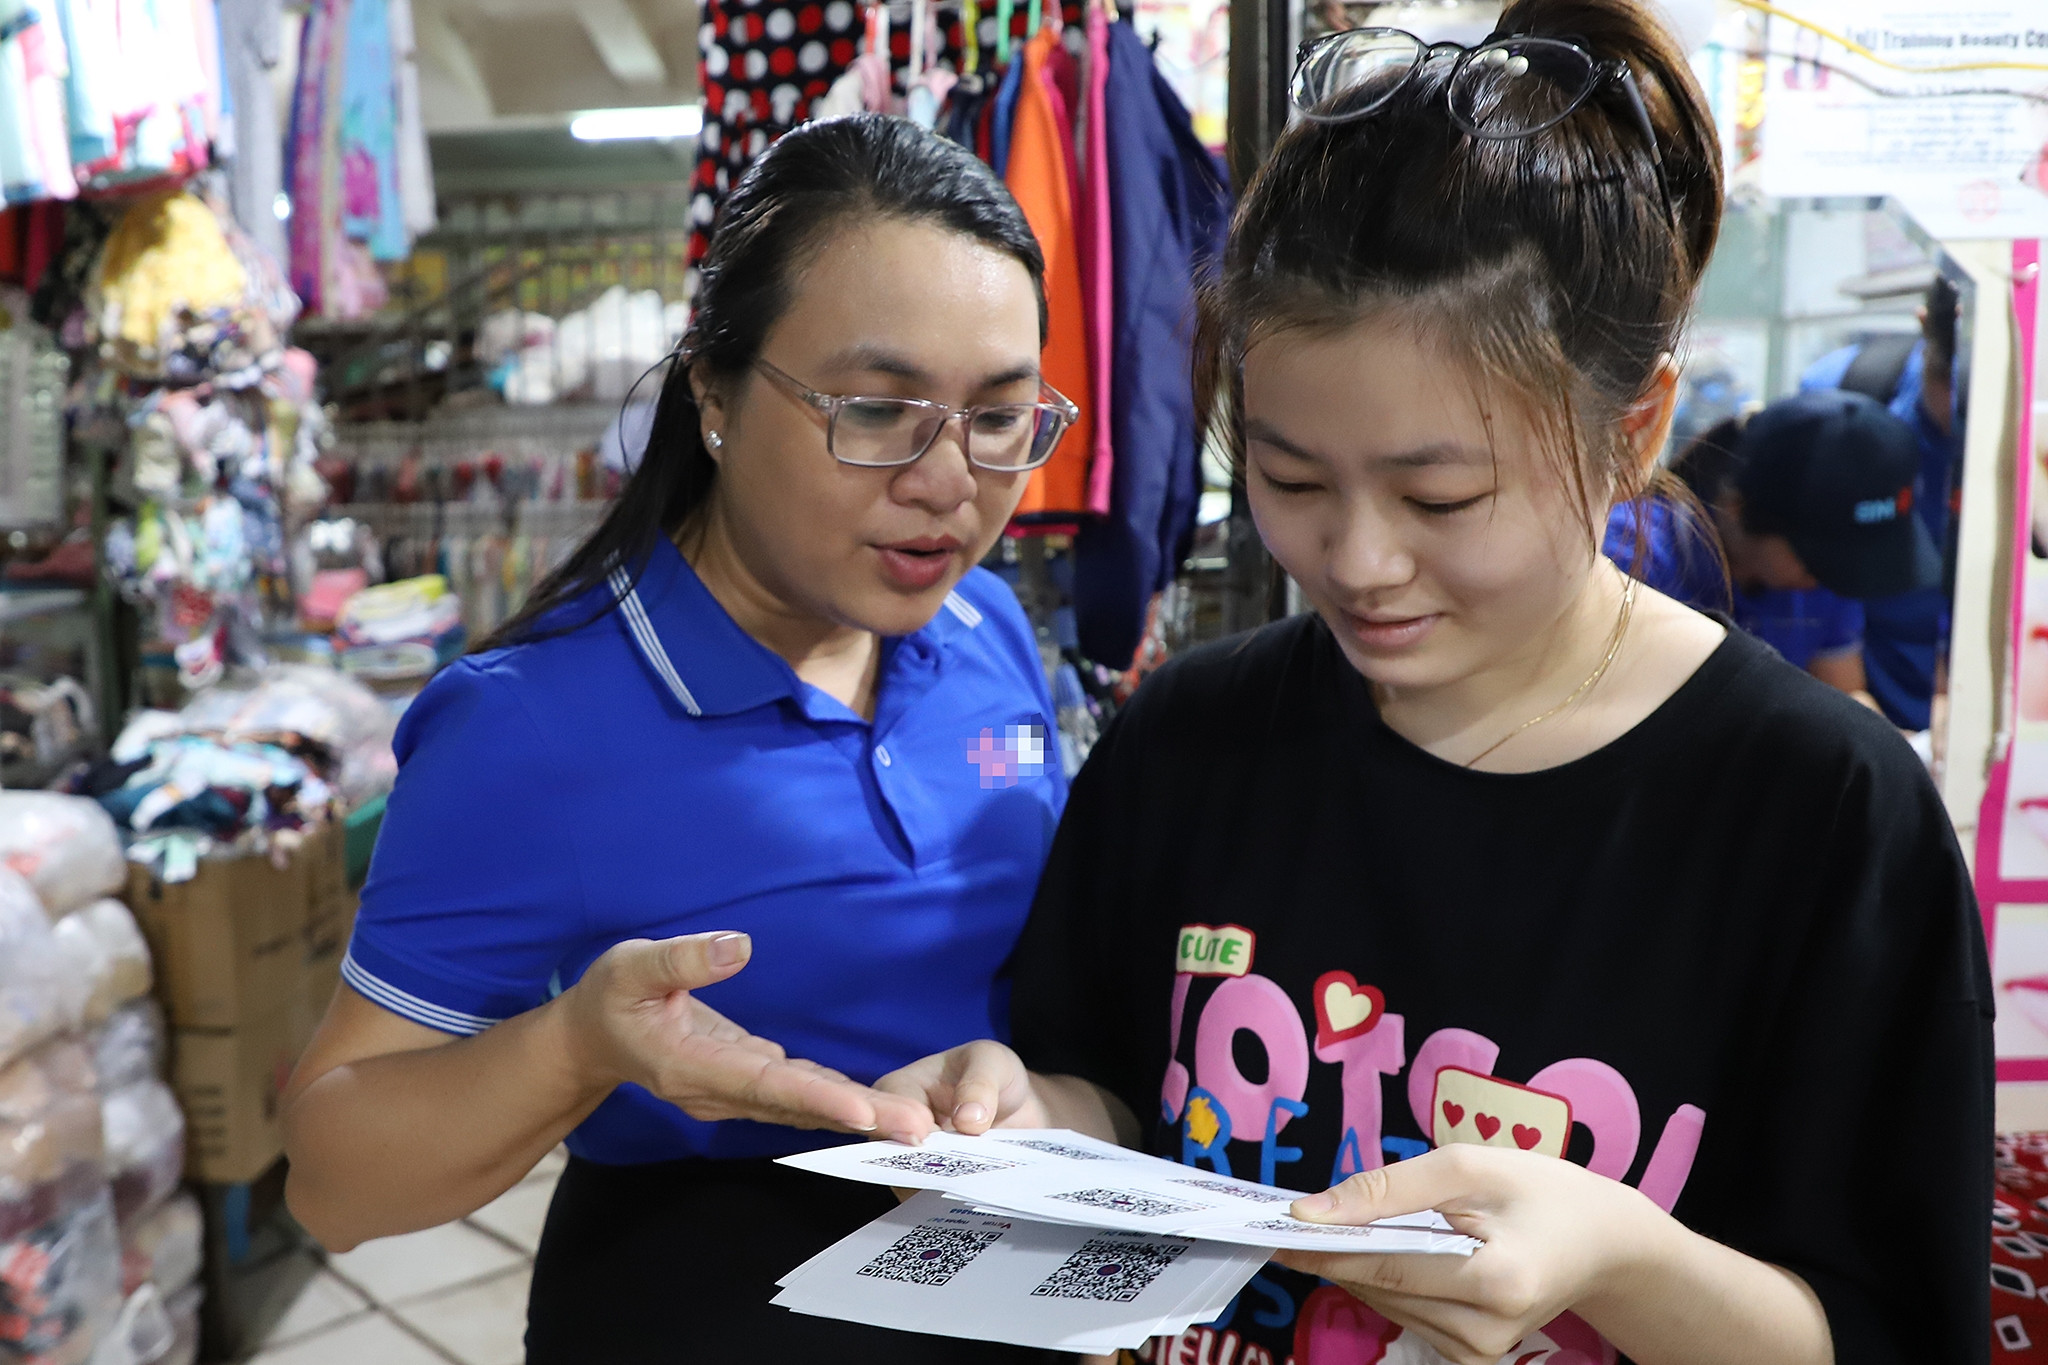 'Thanh toán 30 giây' tại 'Chợ chuyển đổi số' ở Tây Ninh